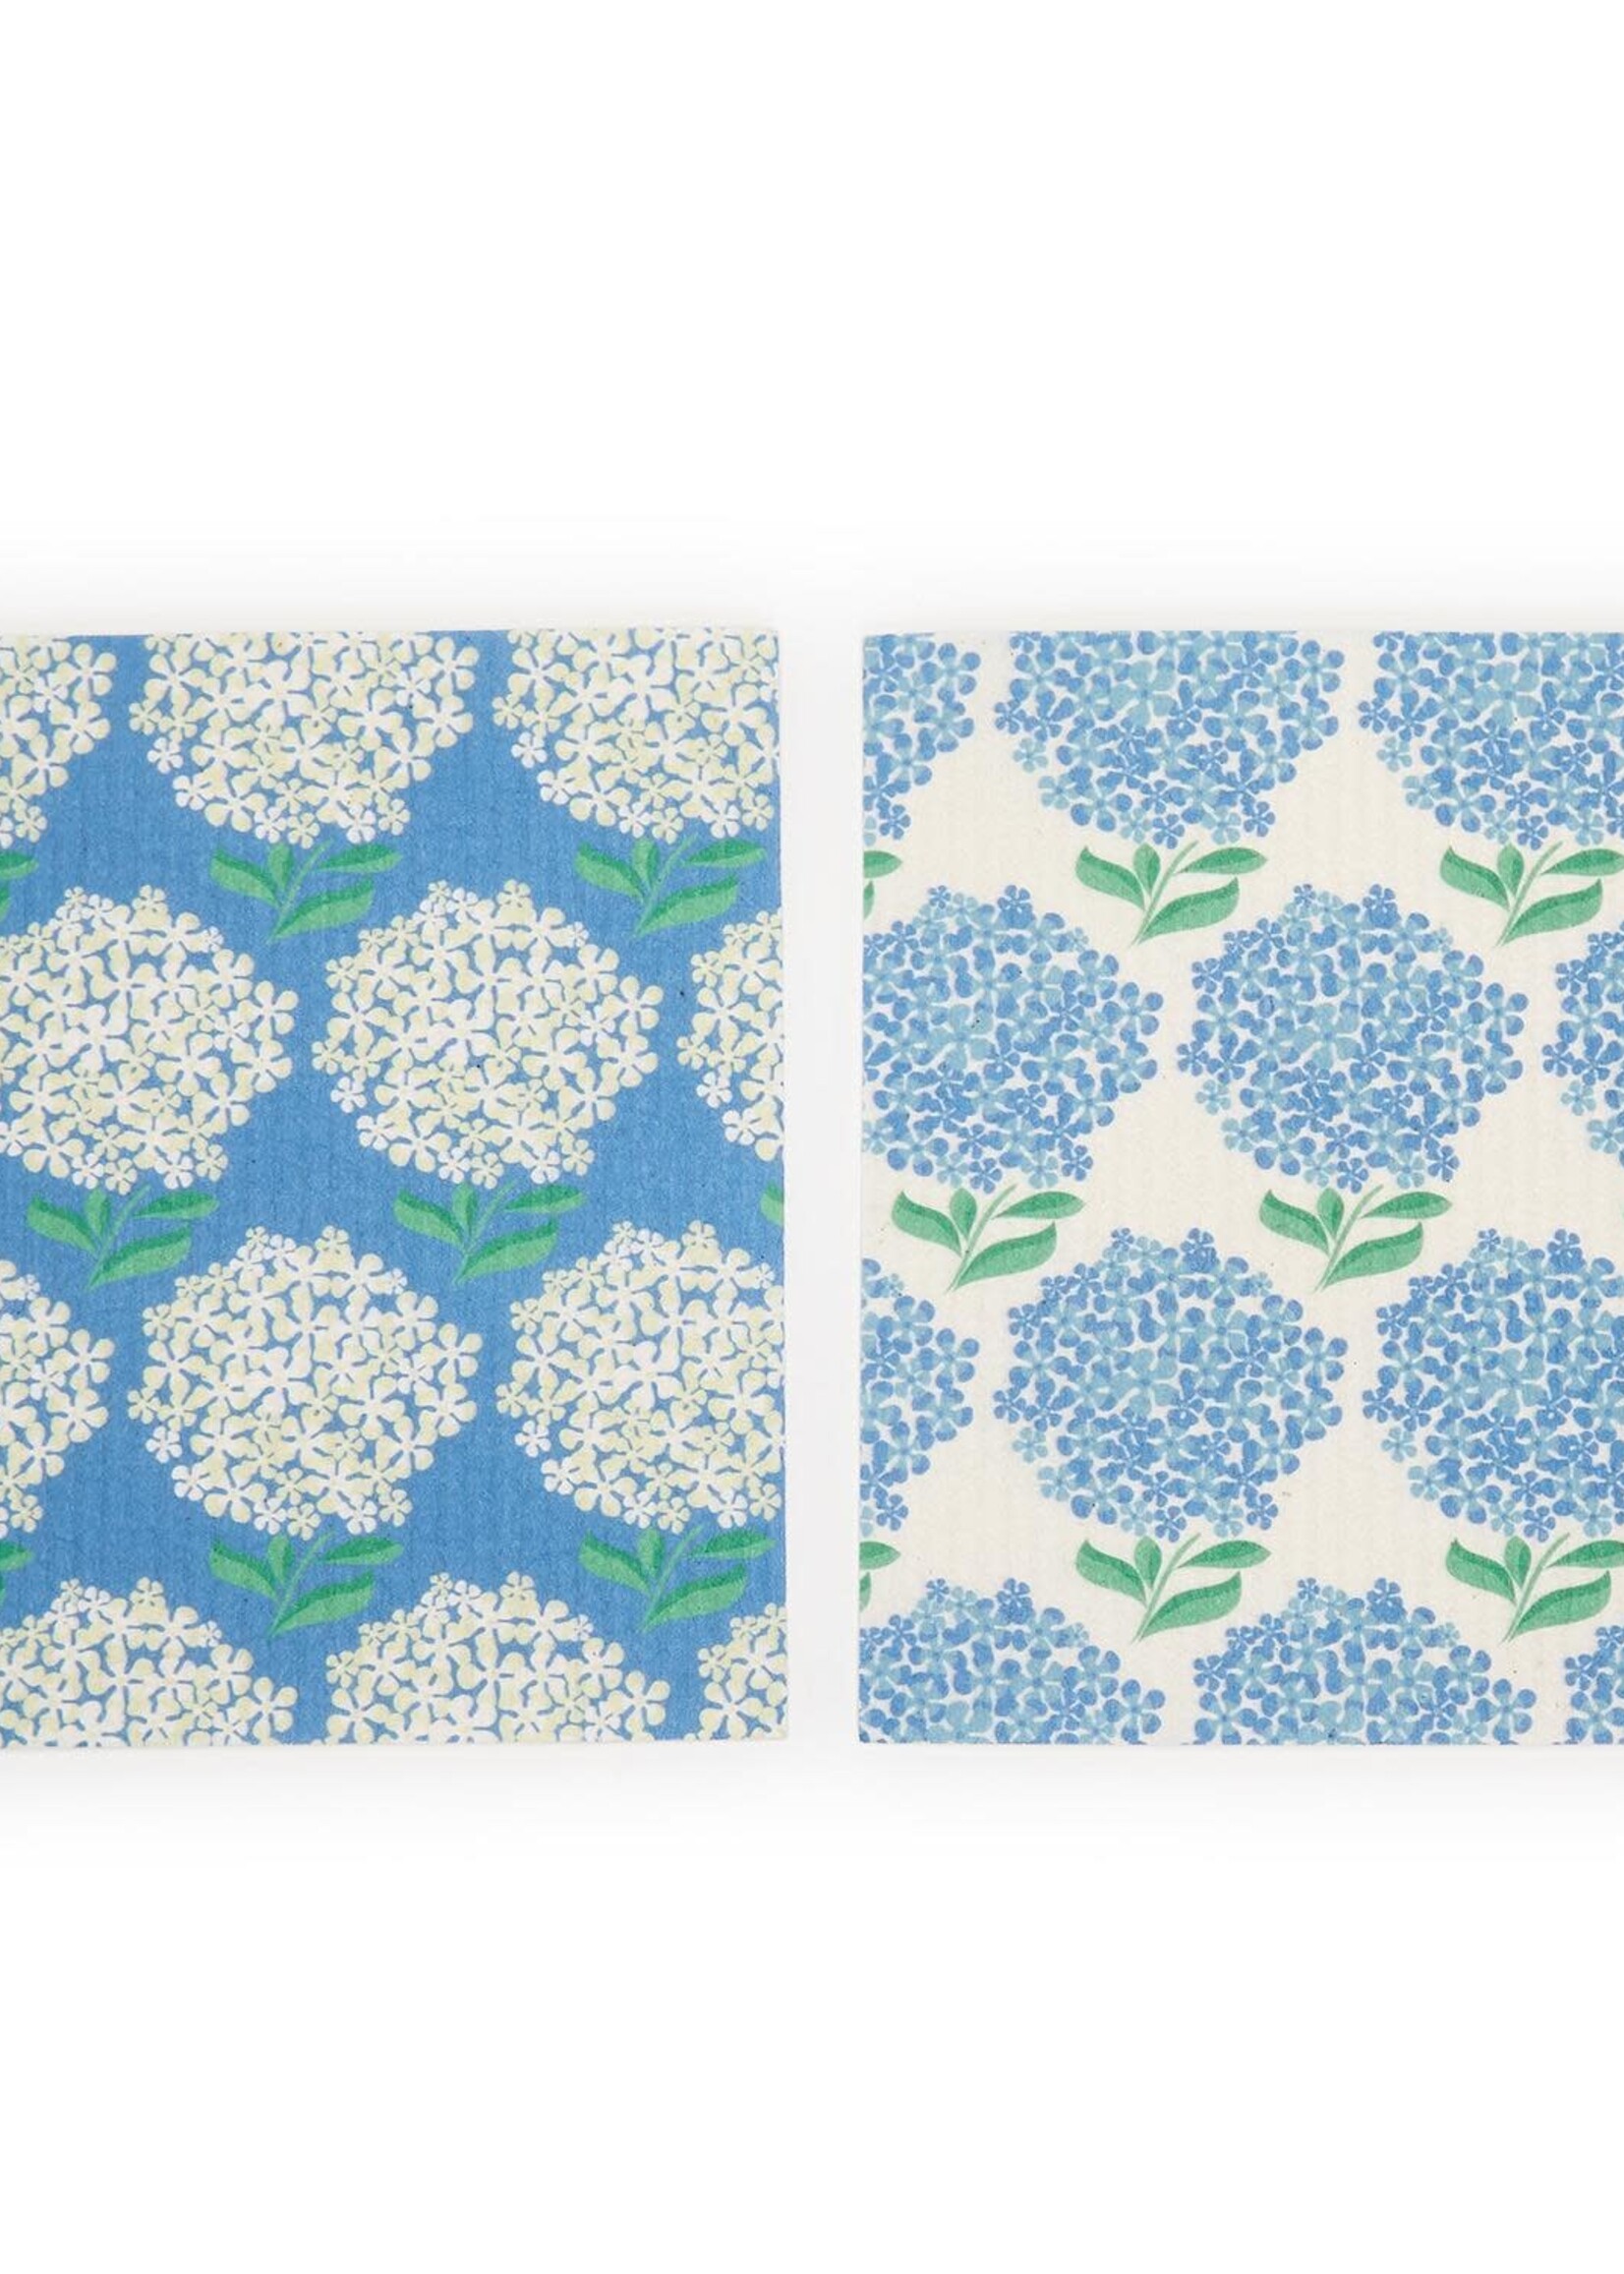 Two’s Company Hydrangea Multipurpose Biodegradable Kitchen Cloth